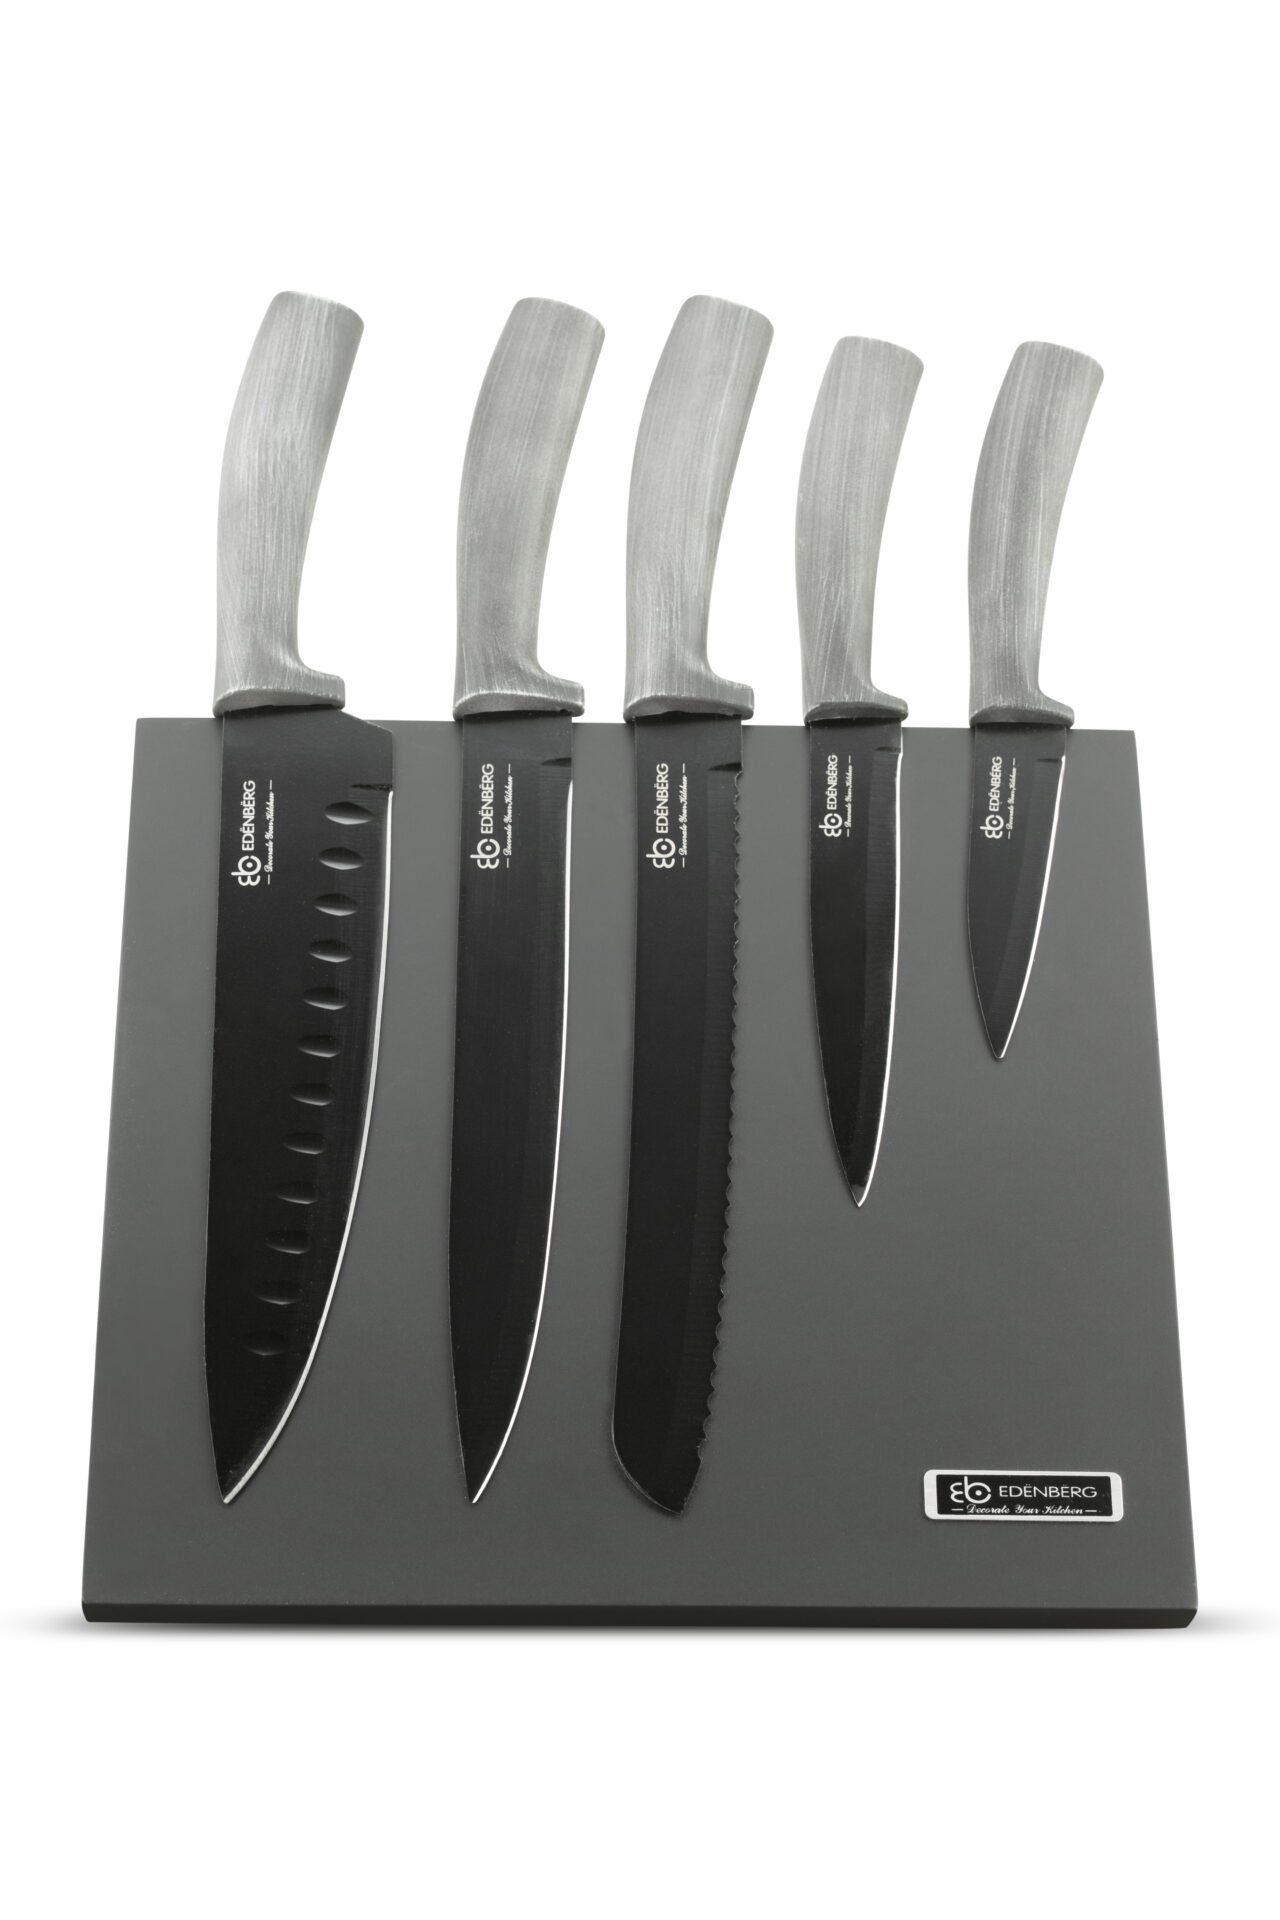 Edenberg Messer-Set Wunderschönes klassisches Messerset, Magnetblock, Grau (6-tlg., Eine ideale Geschenkidee)